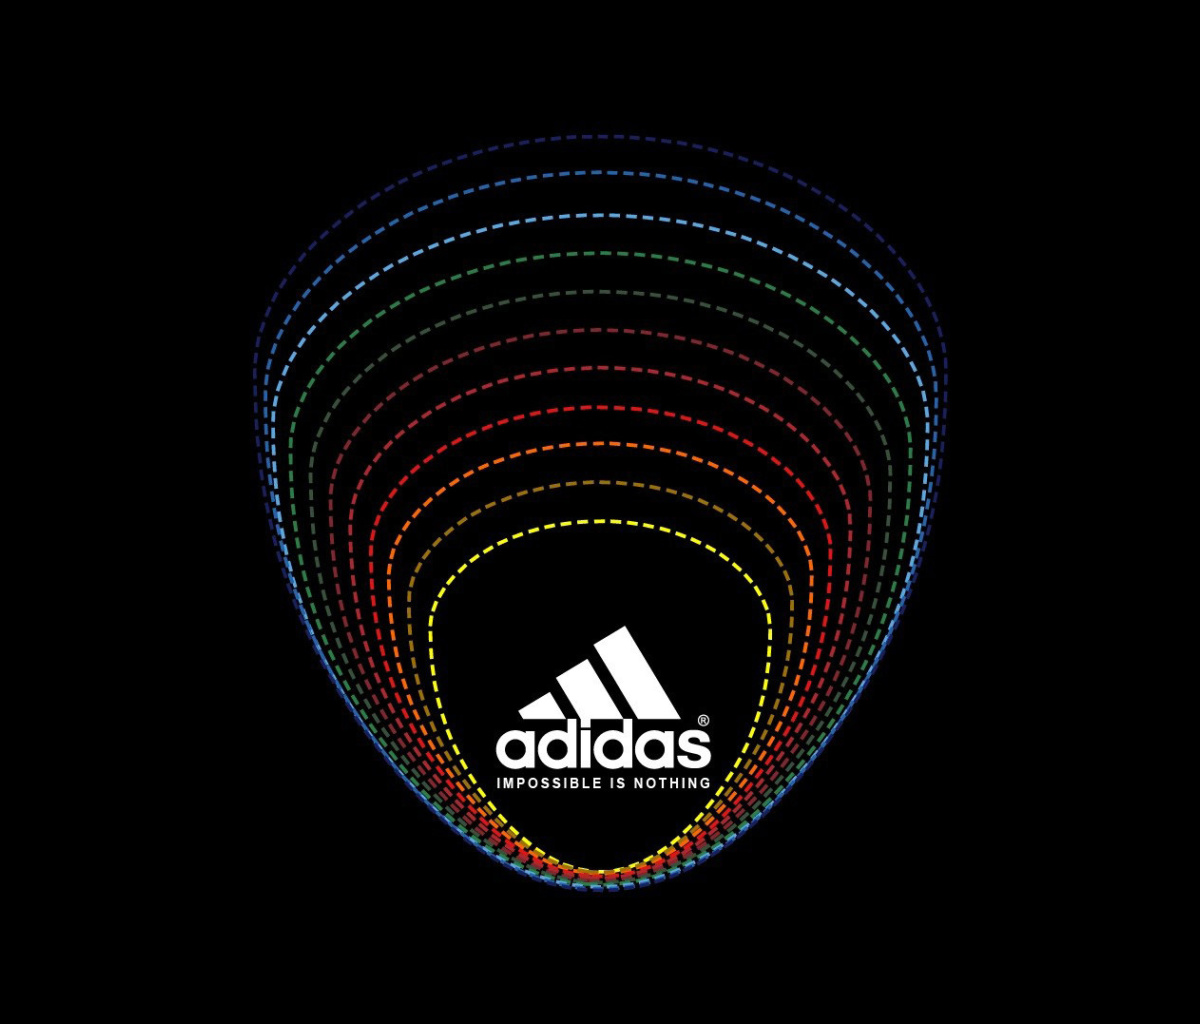 Fondo de pantalla Adidas Tagline, Impossible is Nothing 1200x1024